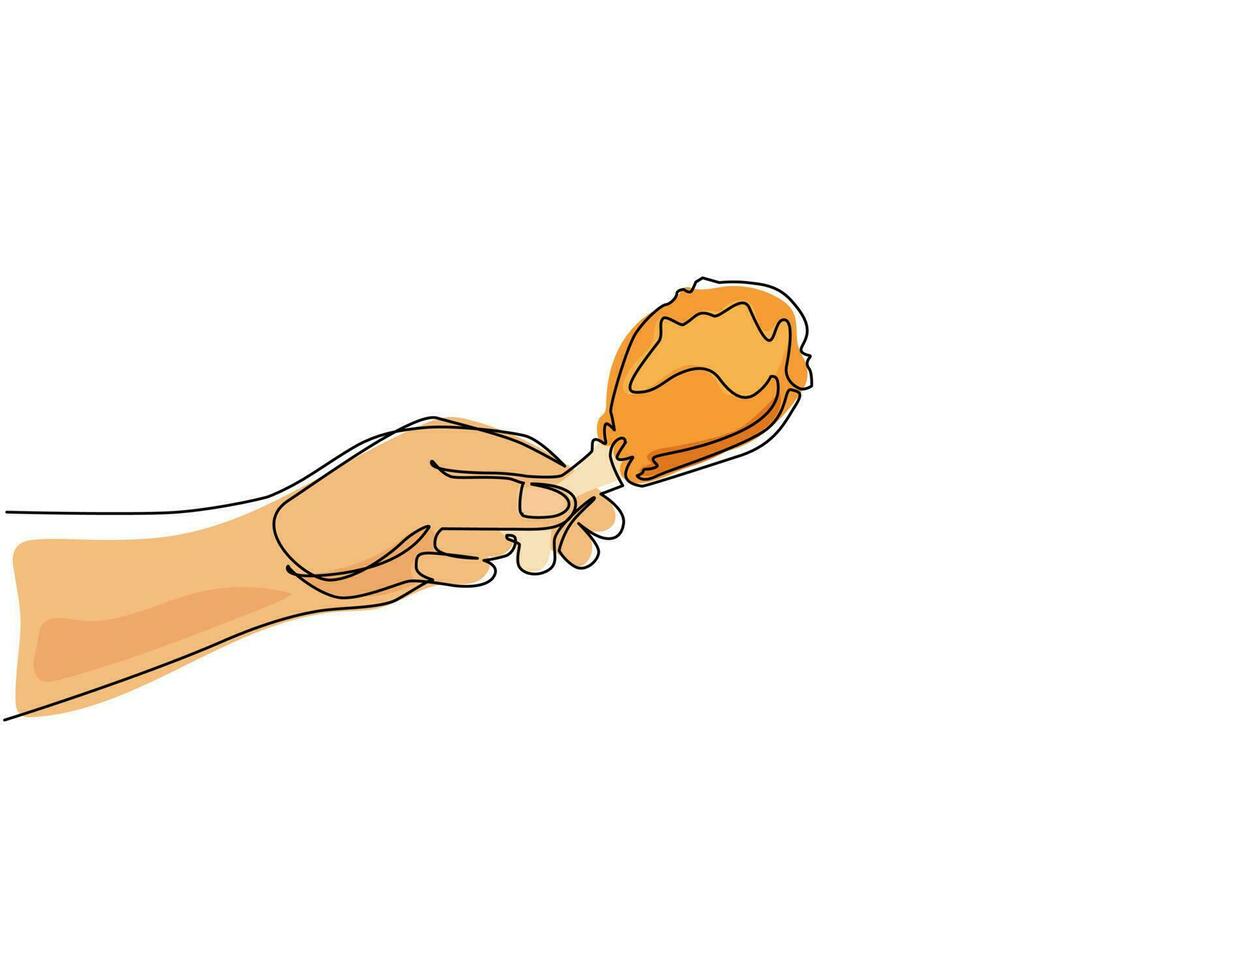 mão de homem de desenho de linha contínua segurando a coxa de frango frito, estilo de desenho. mão segurando coxinha de frango frito, grelhado, assado, perna. ilustração gráfica de vetor de desenho de linha única